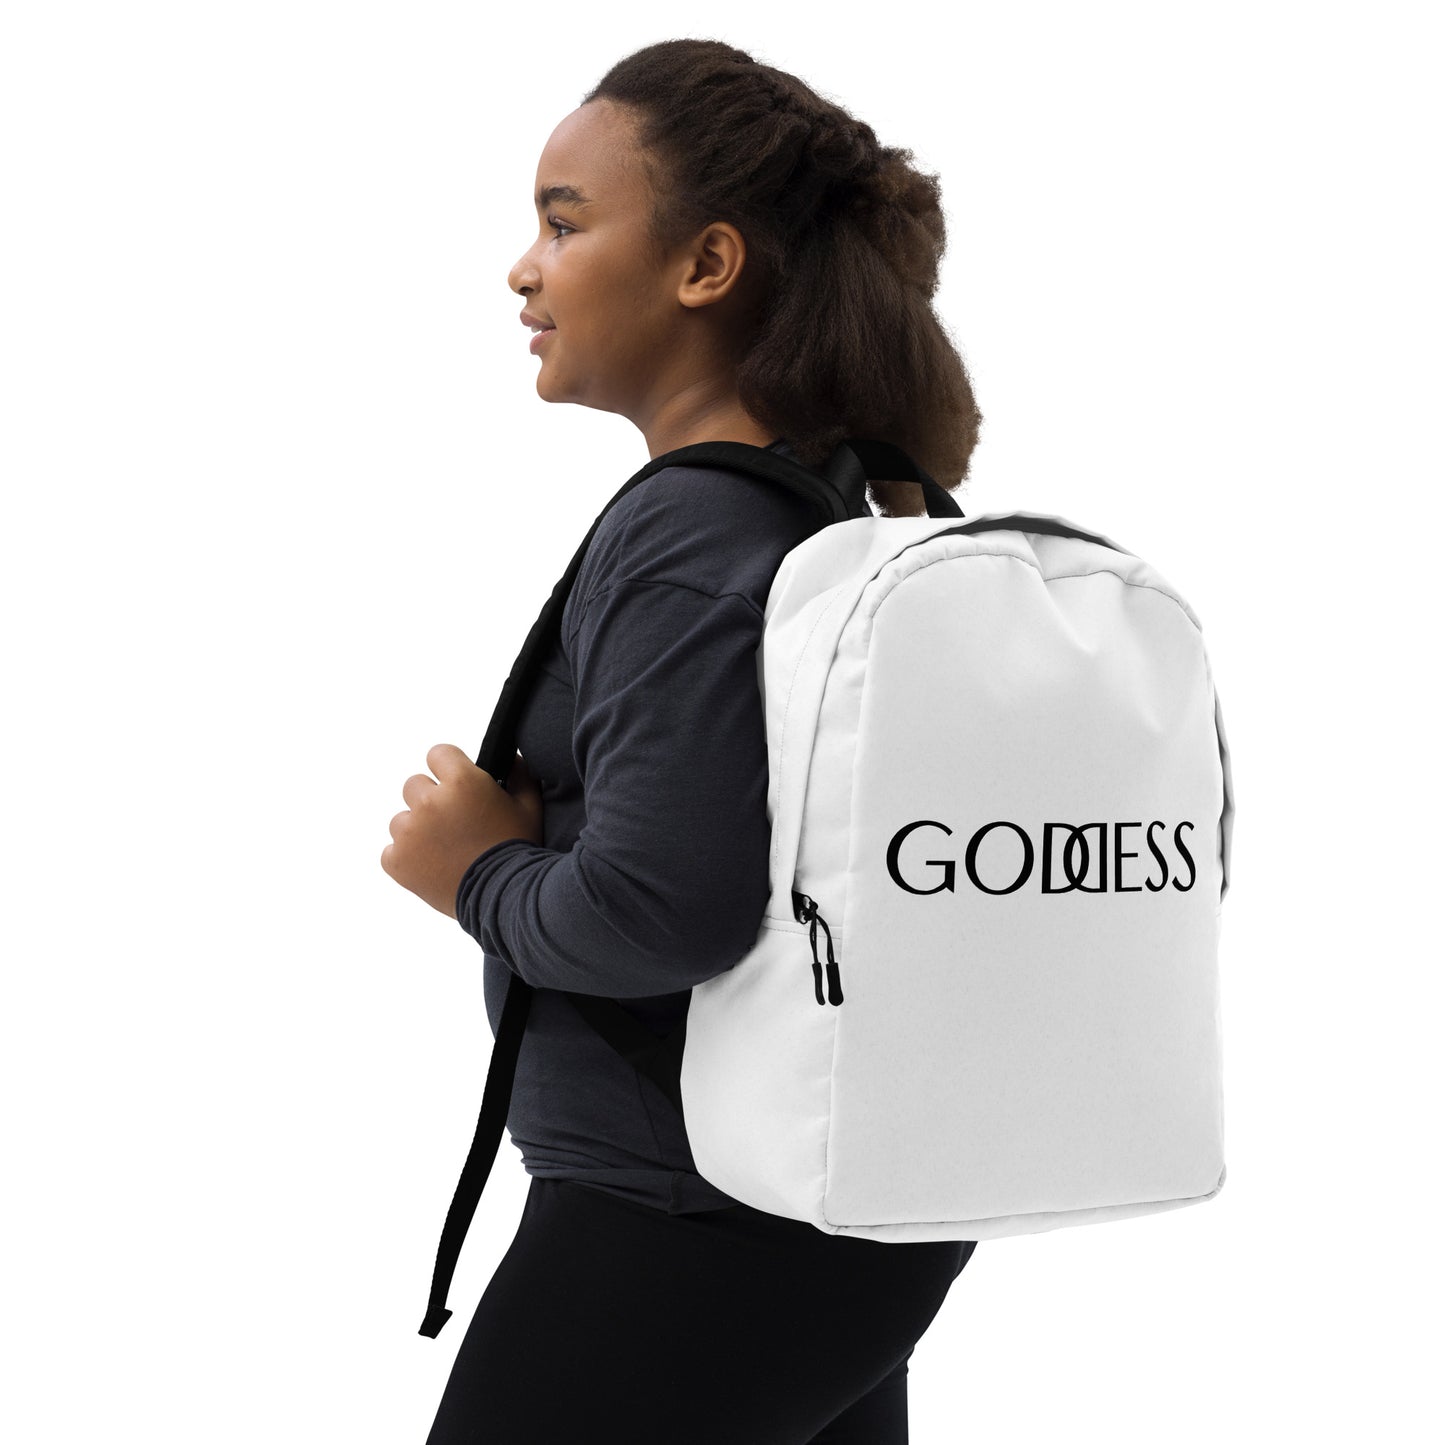 The Goddess Backpack